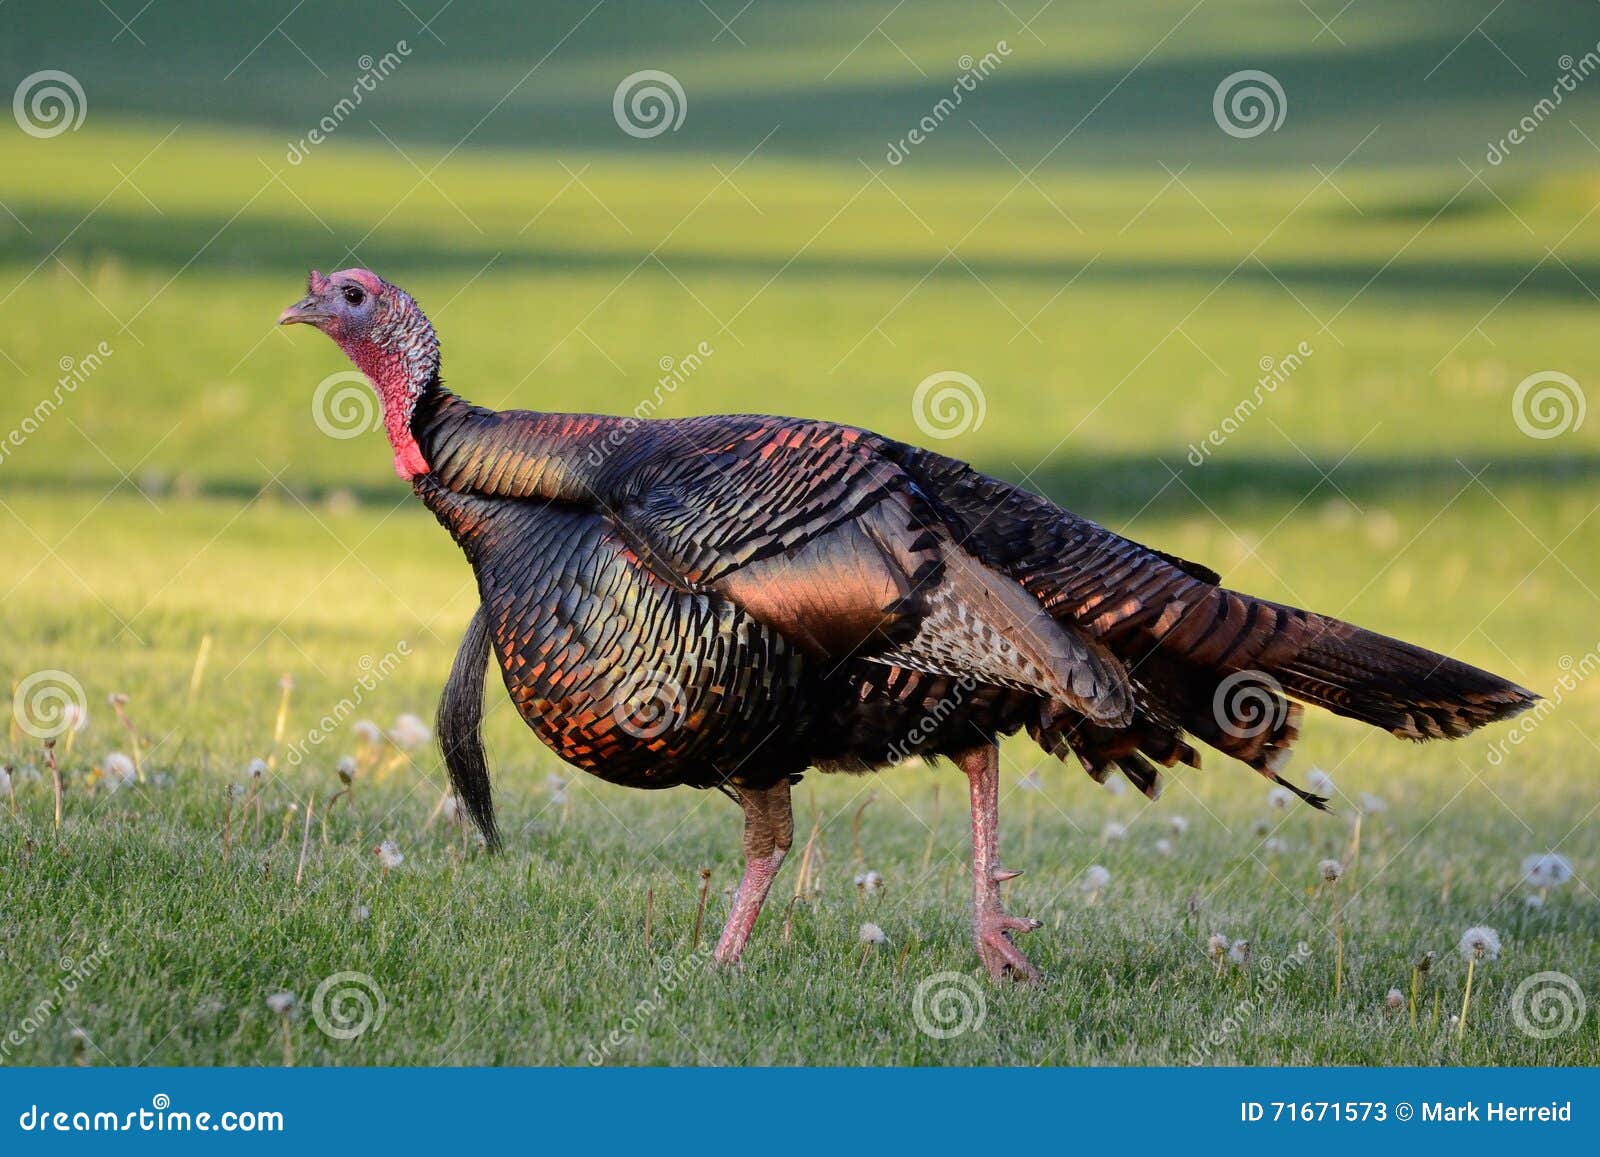 wild turkey (meleagris gallopavo)